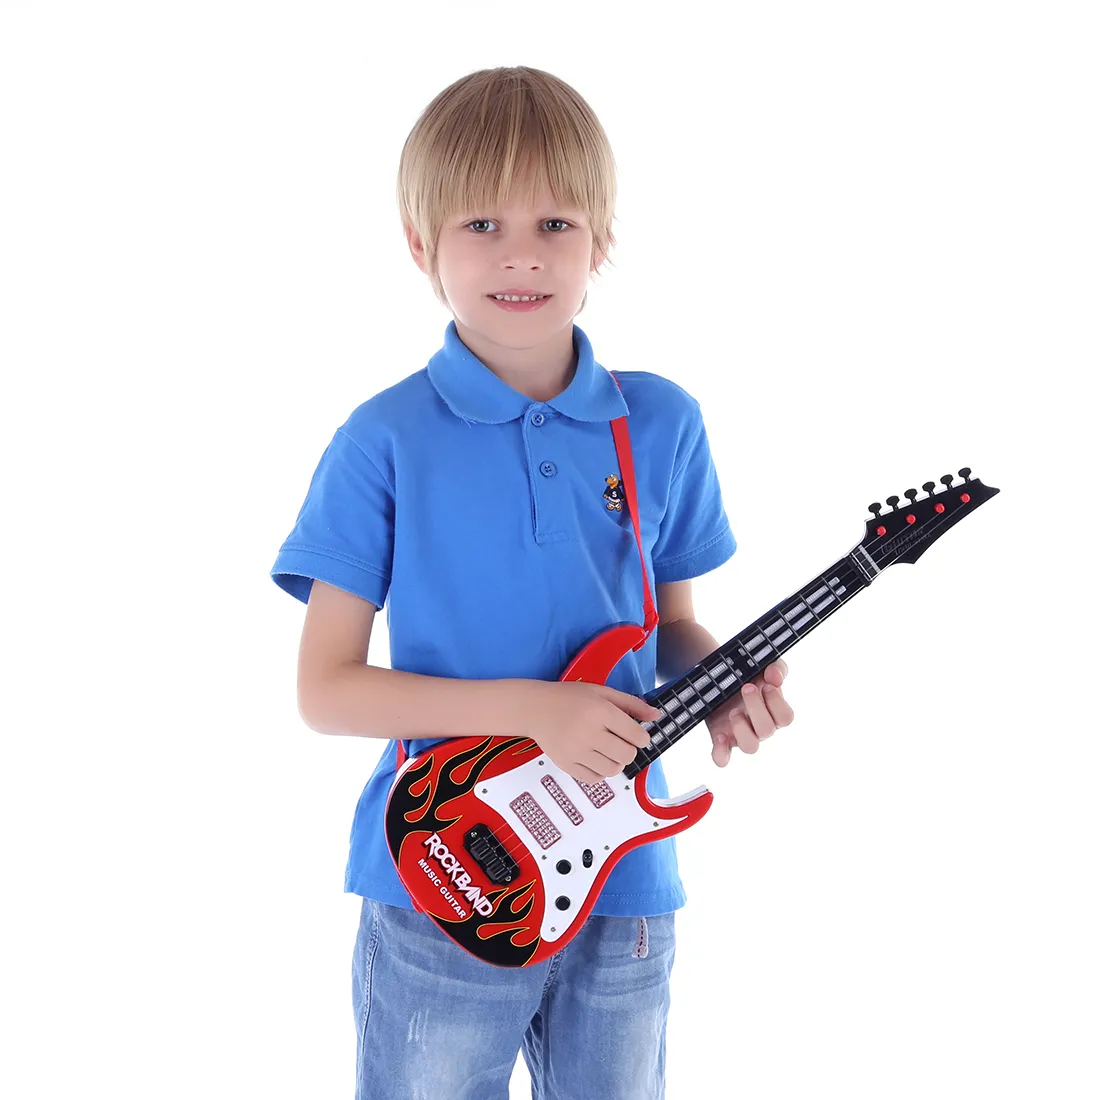 Haute Qualité Chaude 4 Cordes Musique Guitare Électrique Enfants Instruments De Musique Jouets Éducatifs Pour Enfants Noël Nouvel An Cadeaux LJ200907